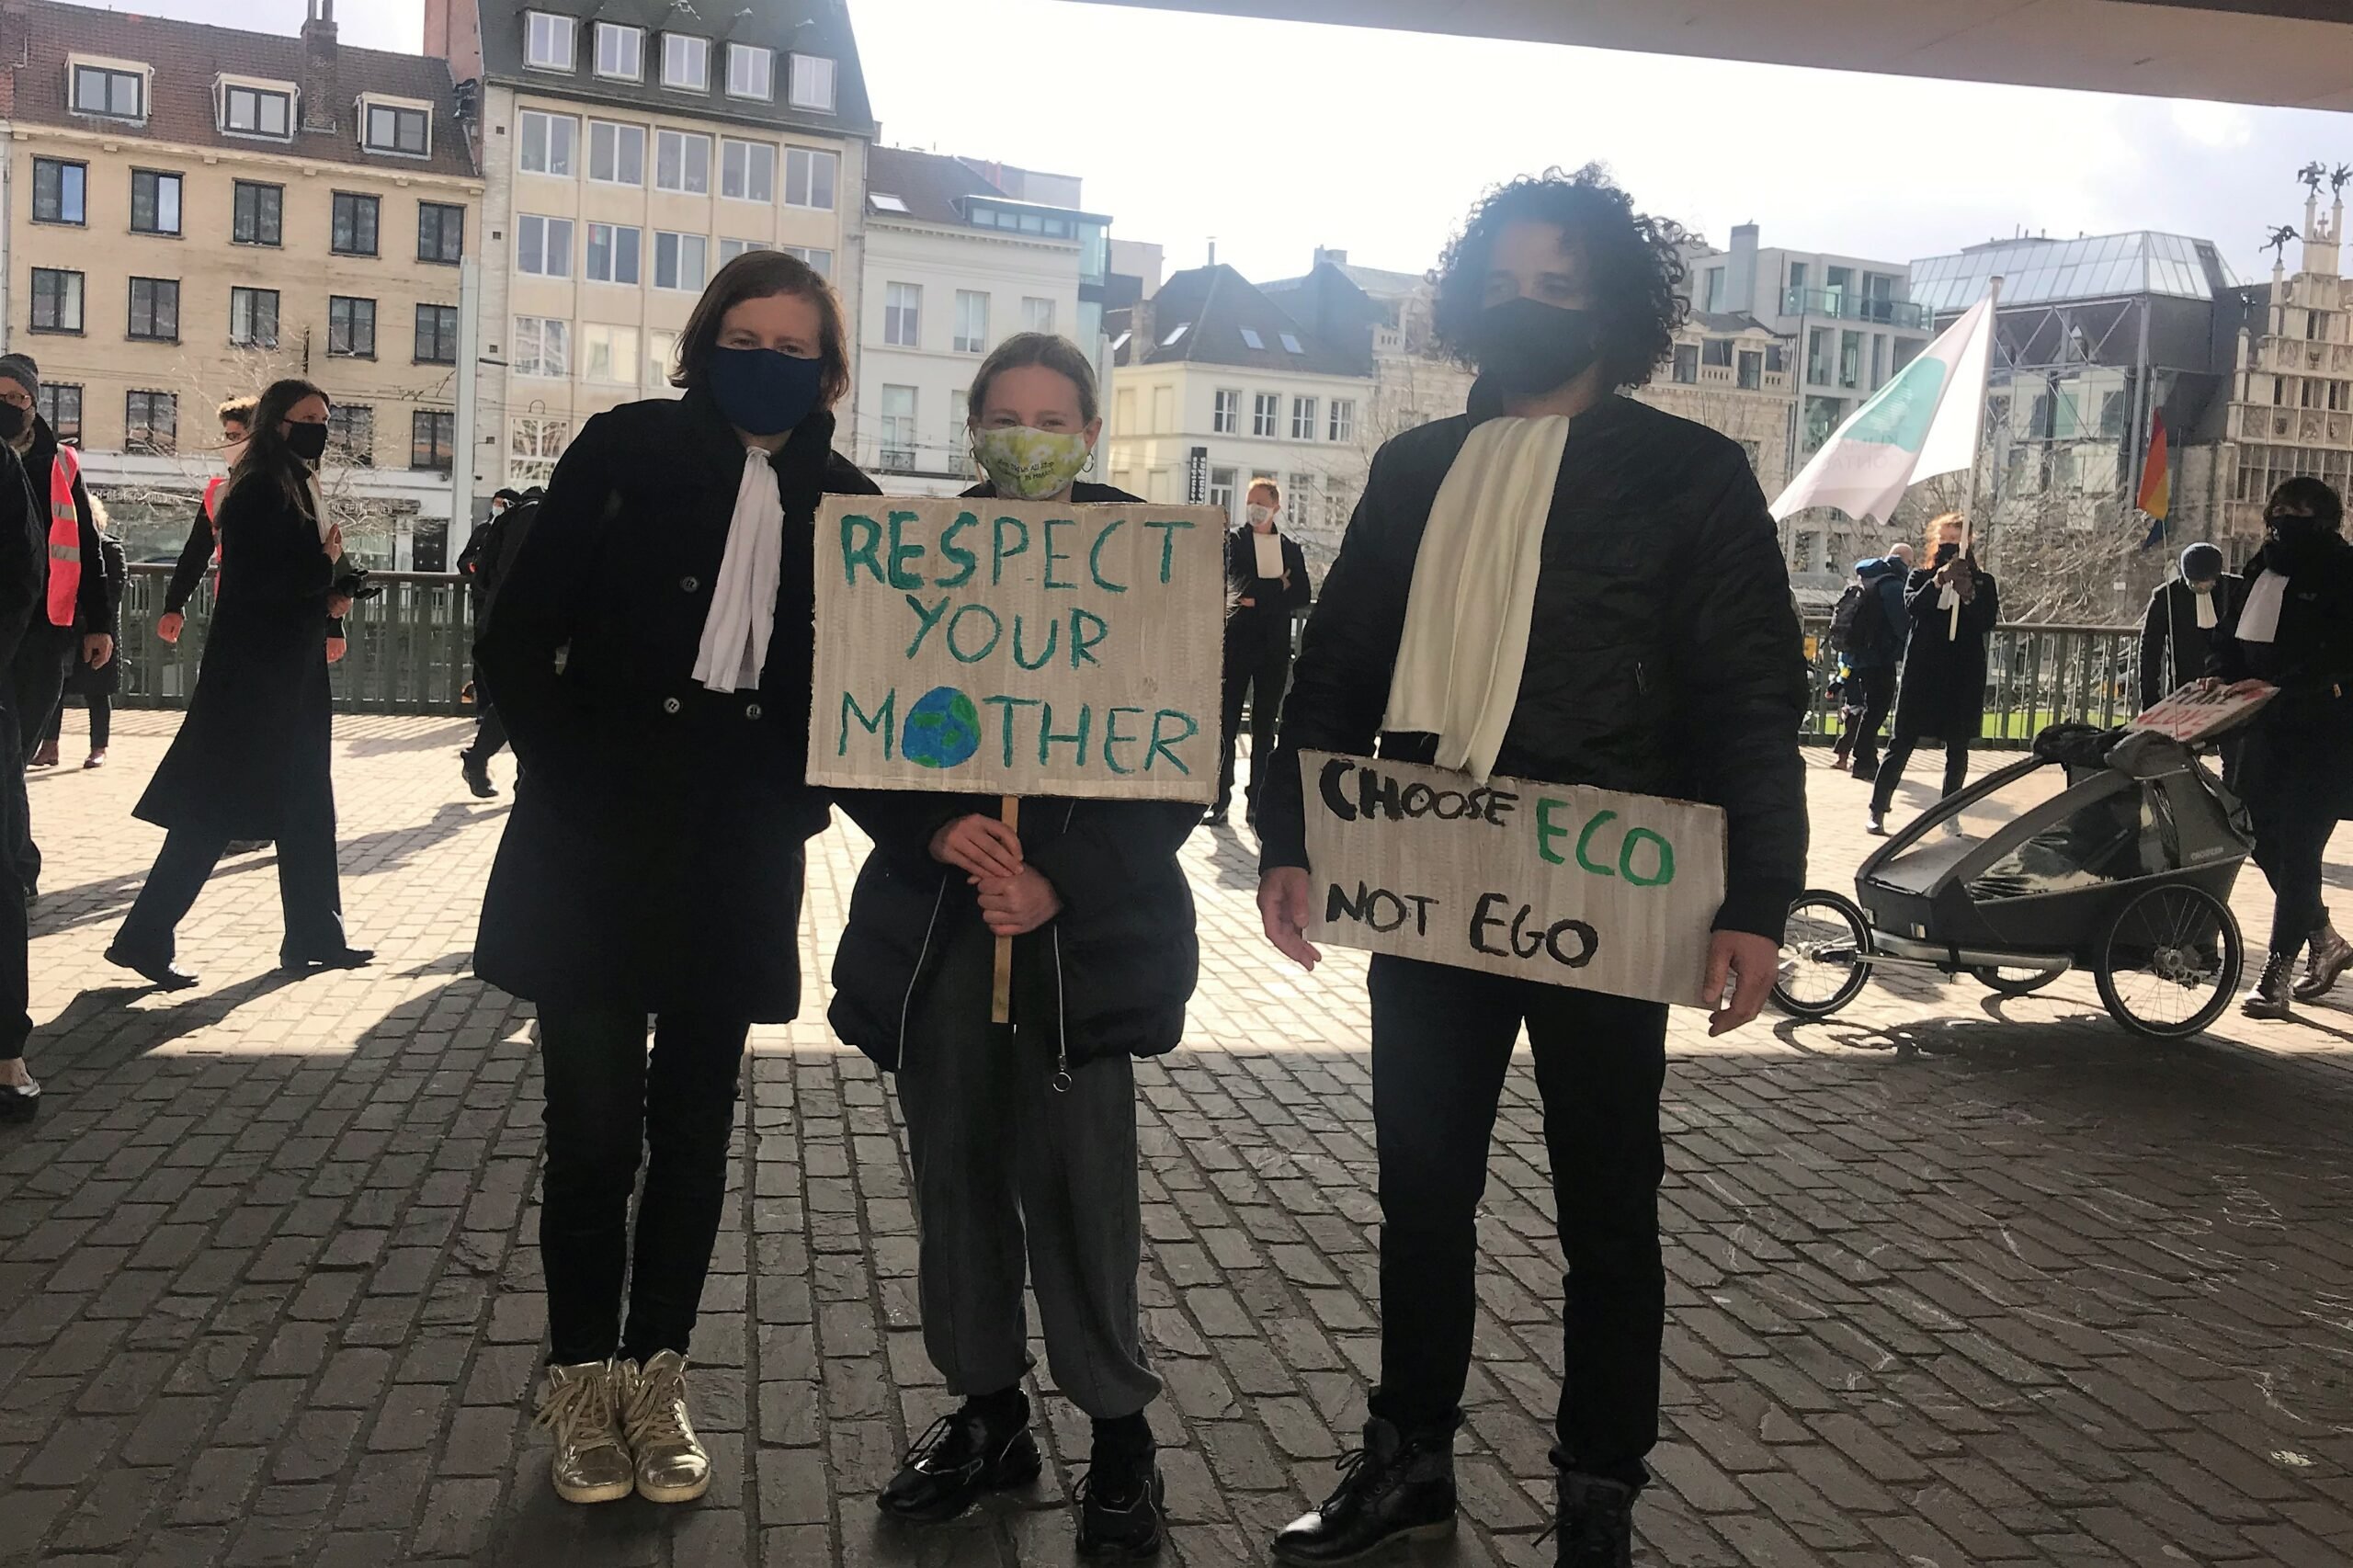 3 klimaatadvocaten met protestborden "respect our mother"